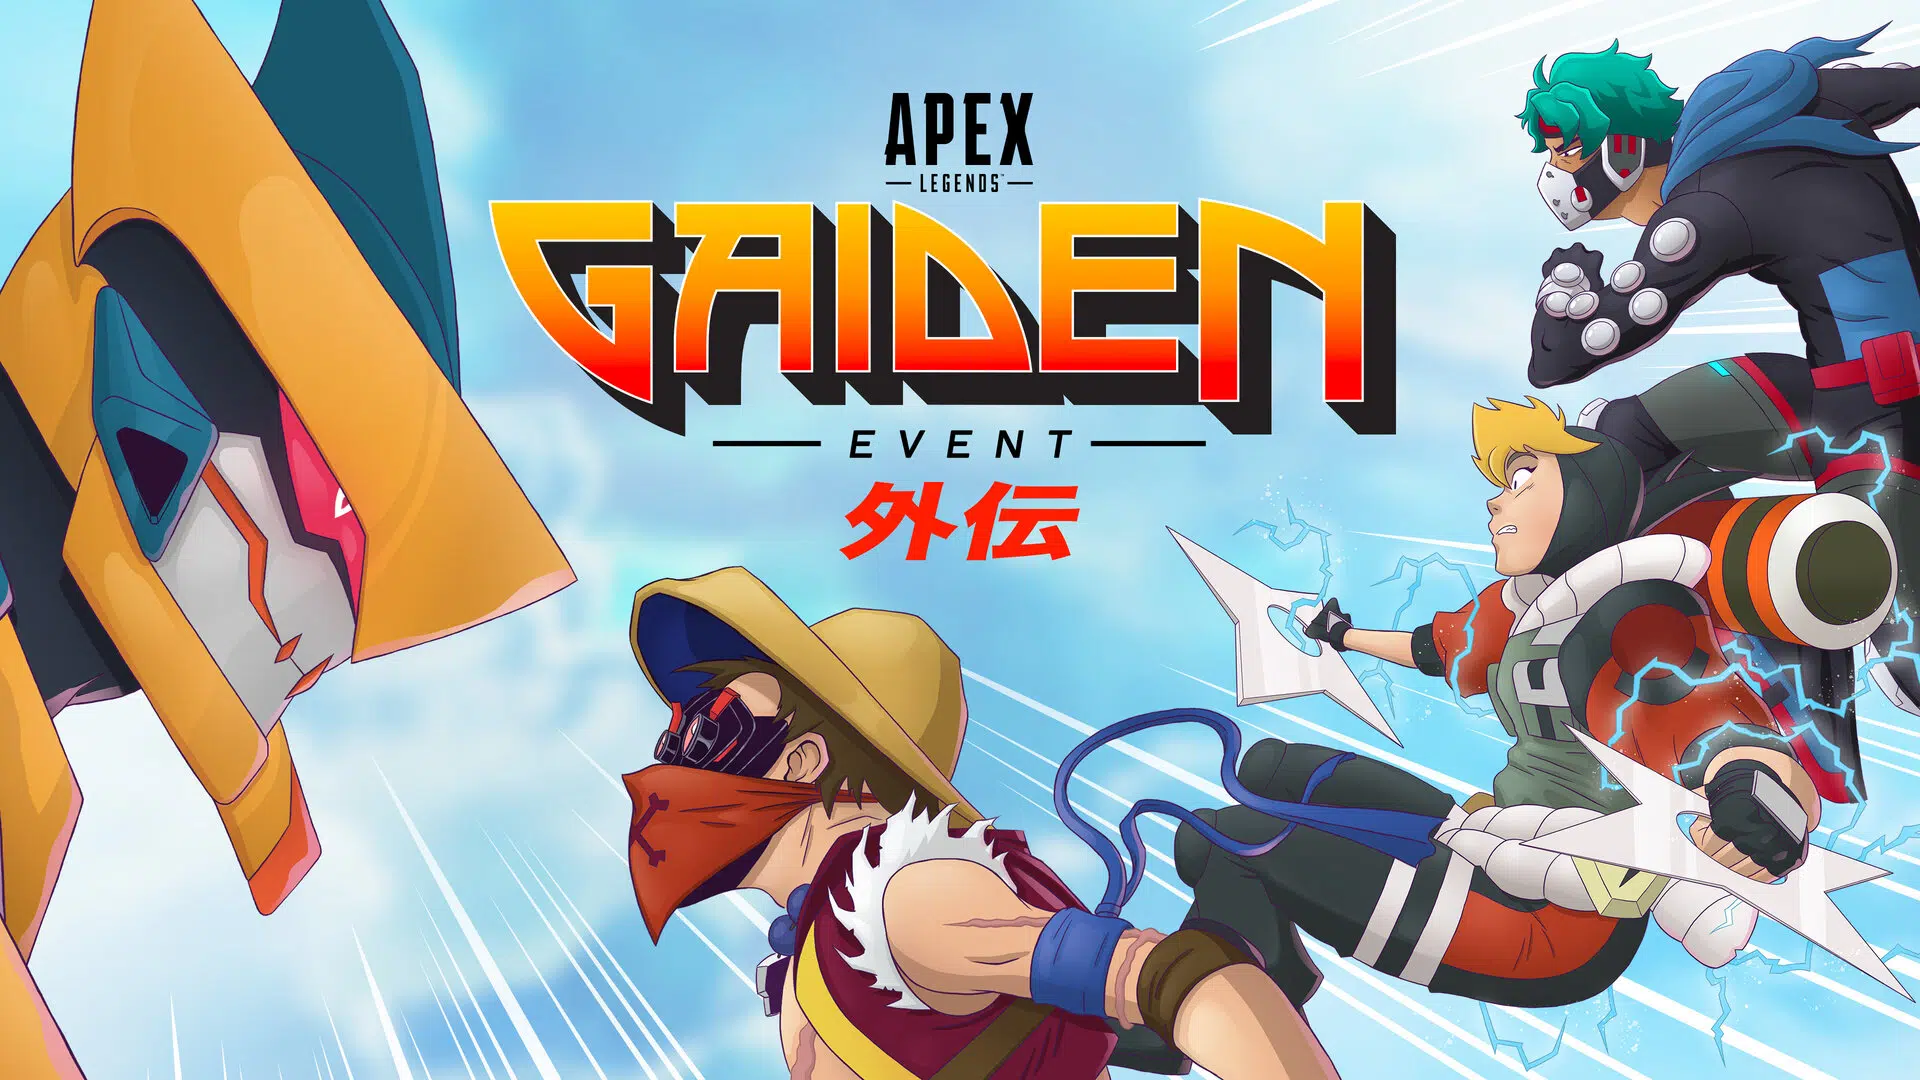 Apex Legends Gaiden Event anime